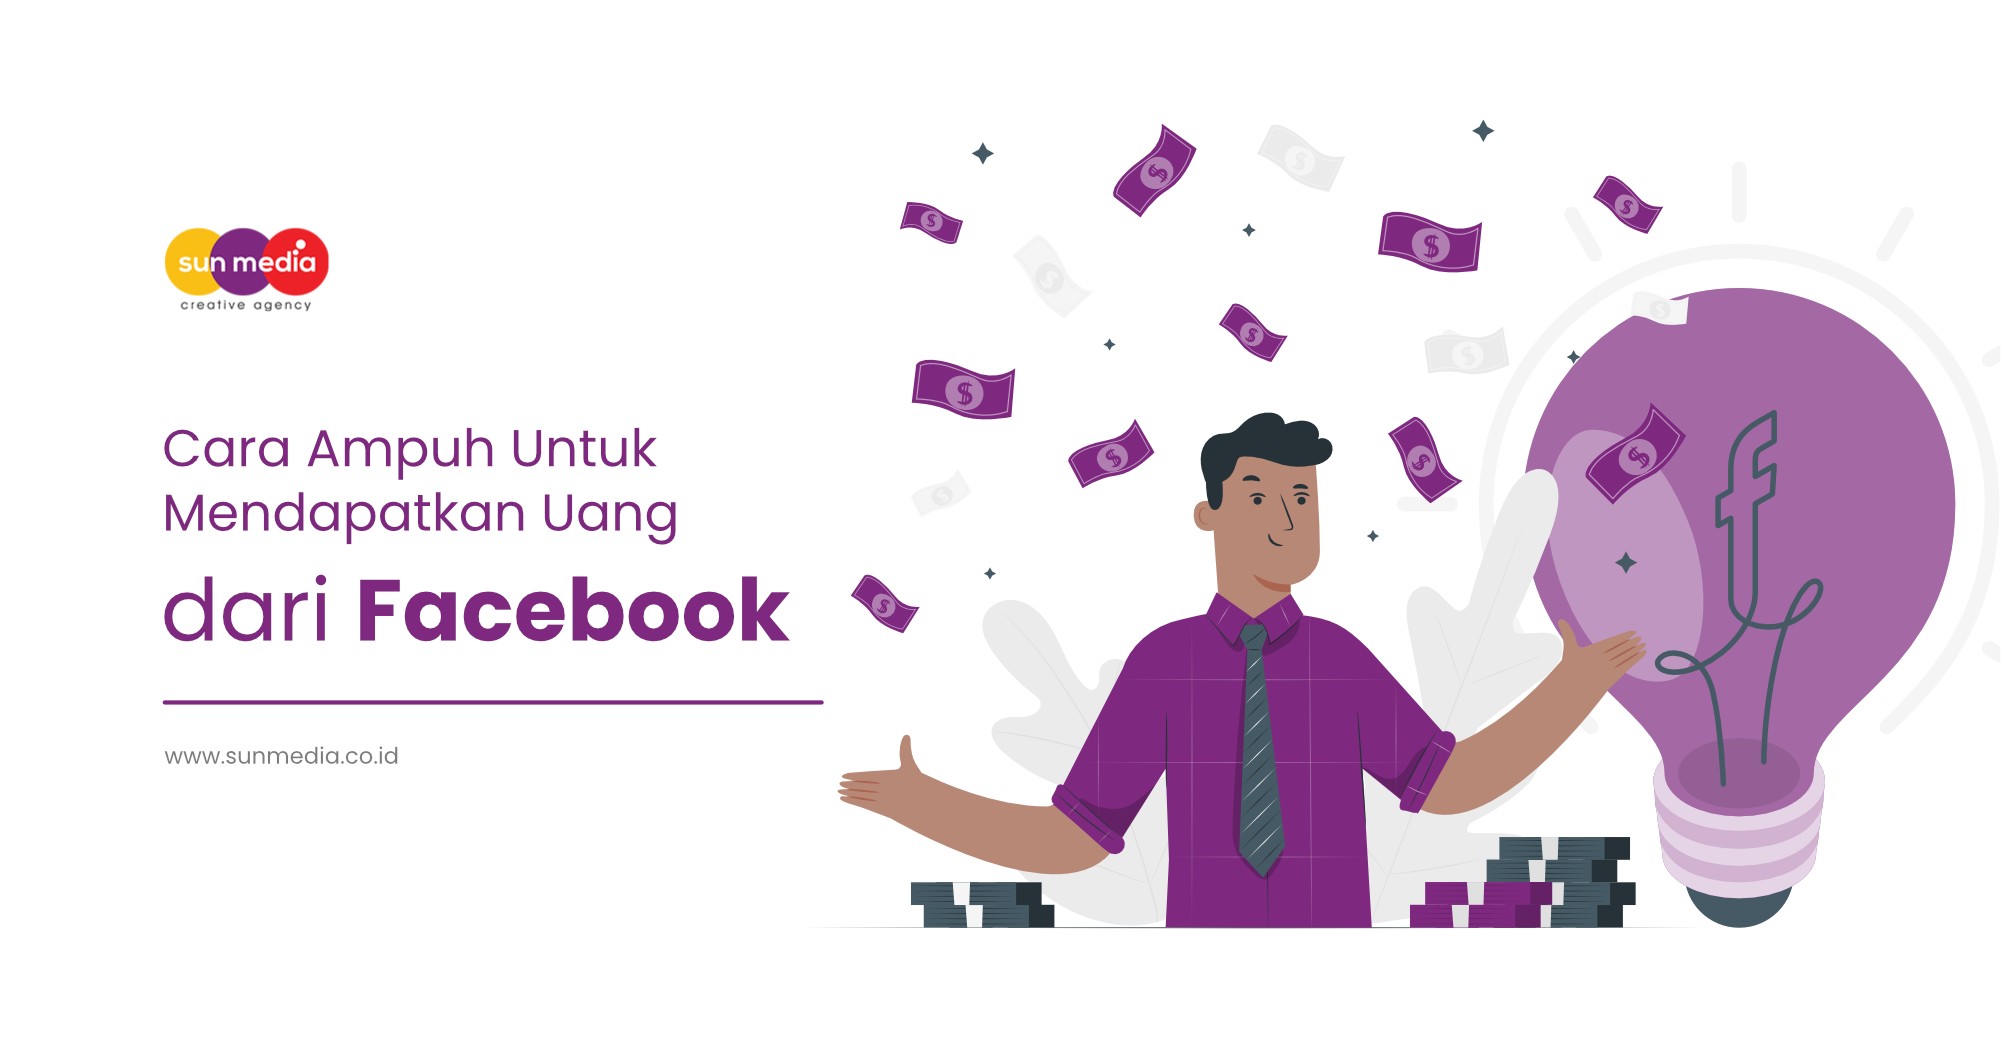 Cara Ampuh Untuk Mendapatkan Uang dari Facebook